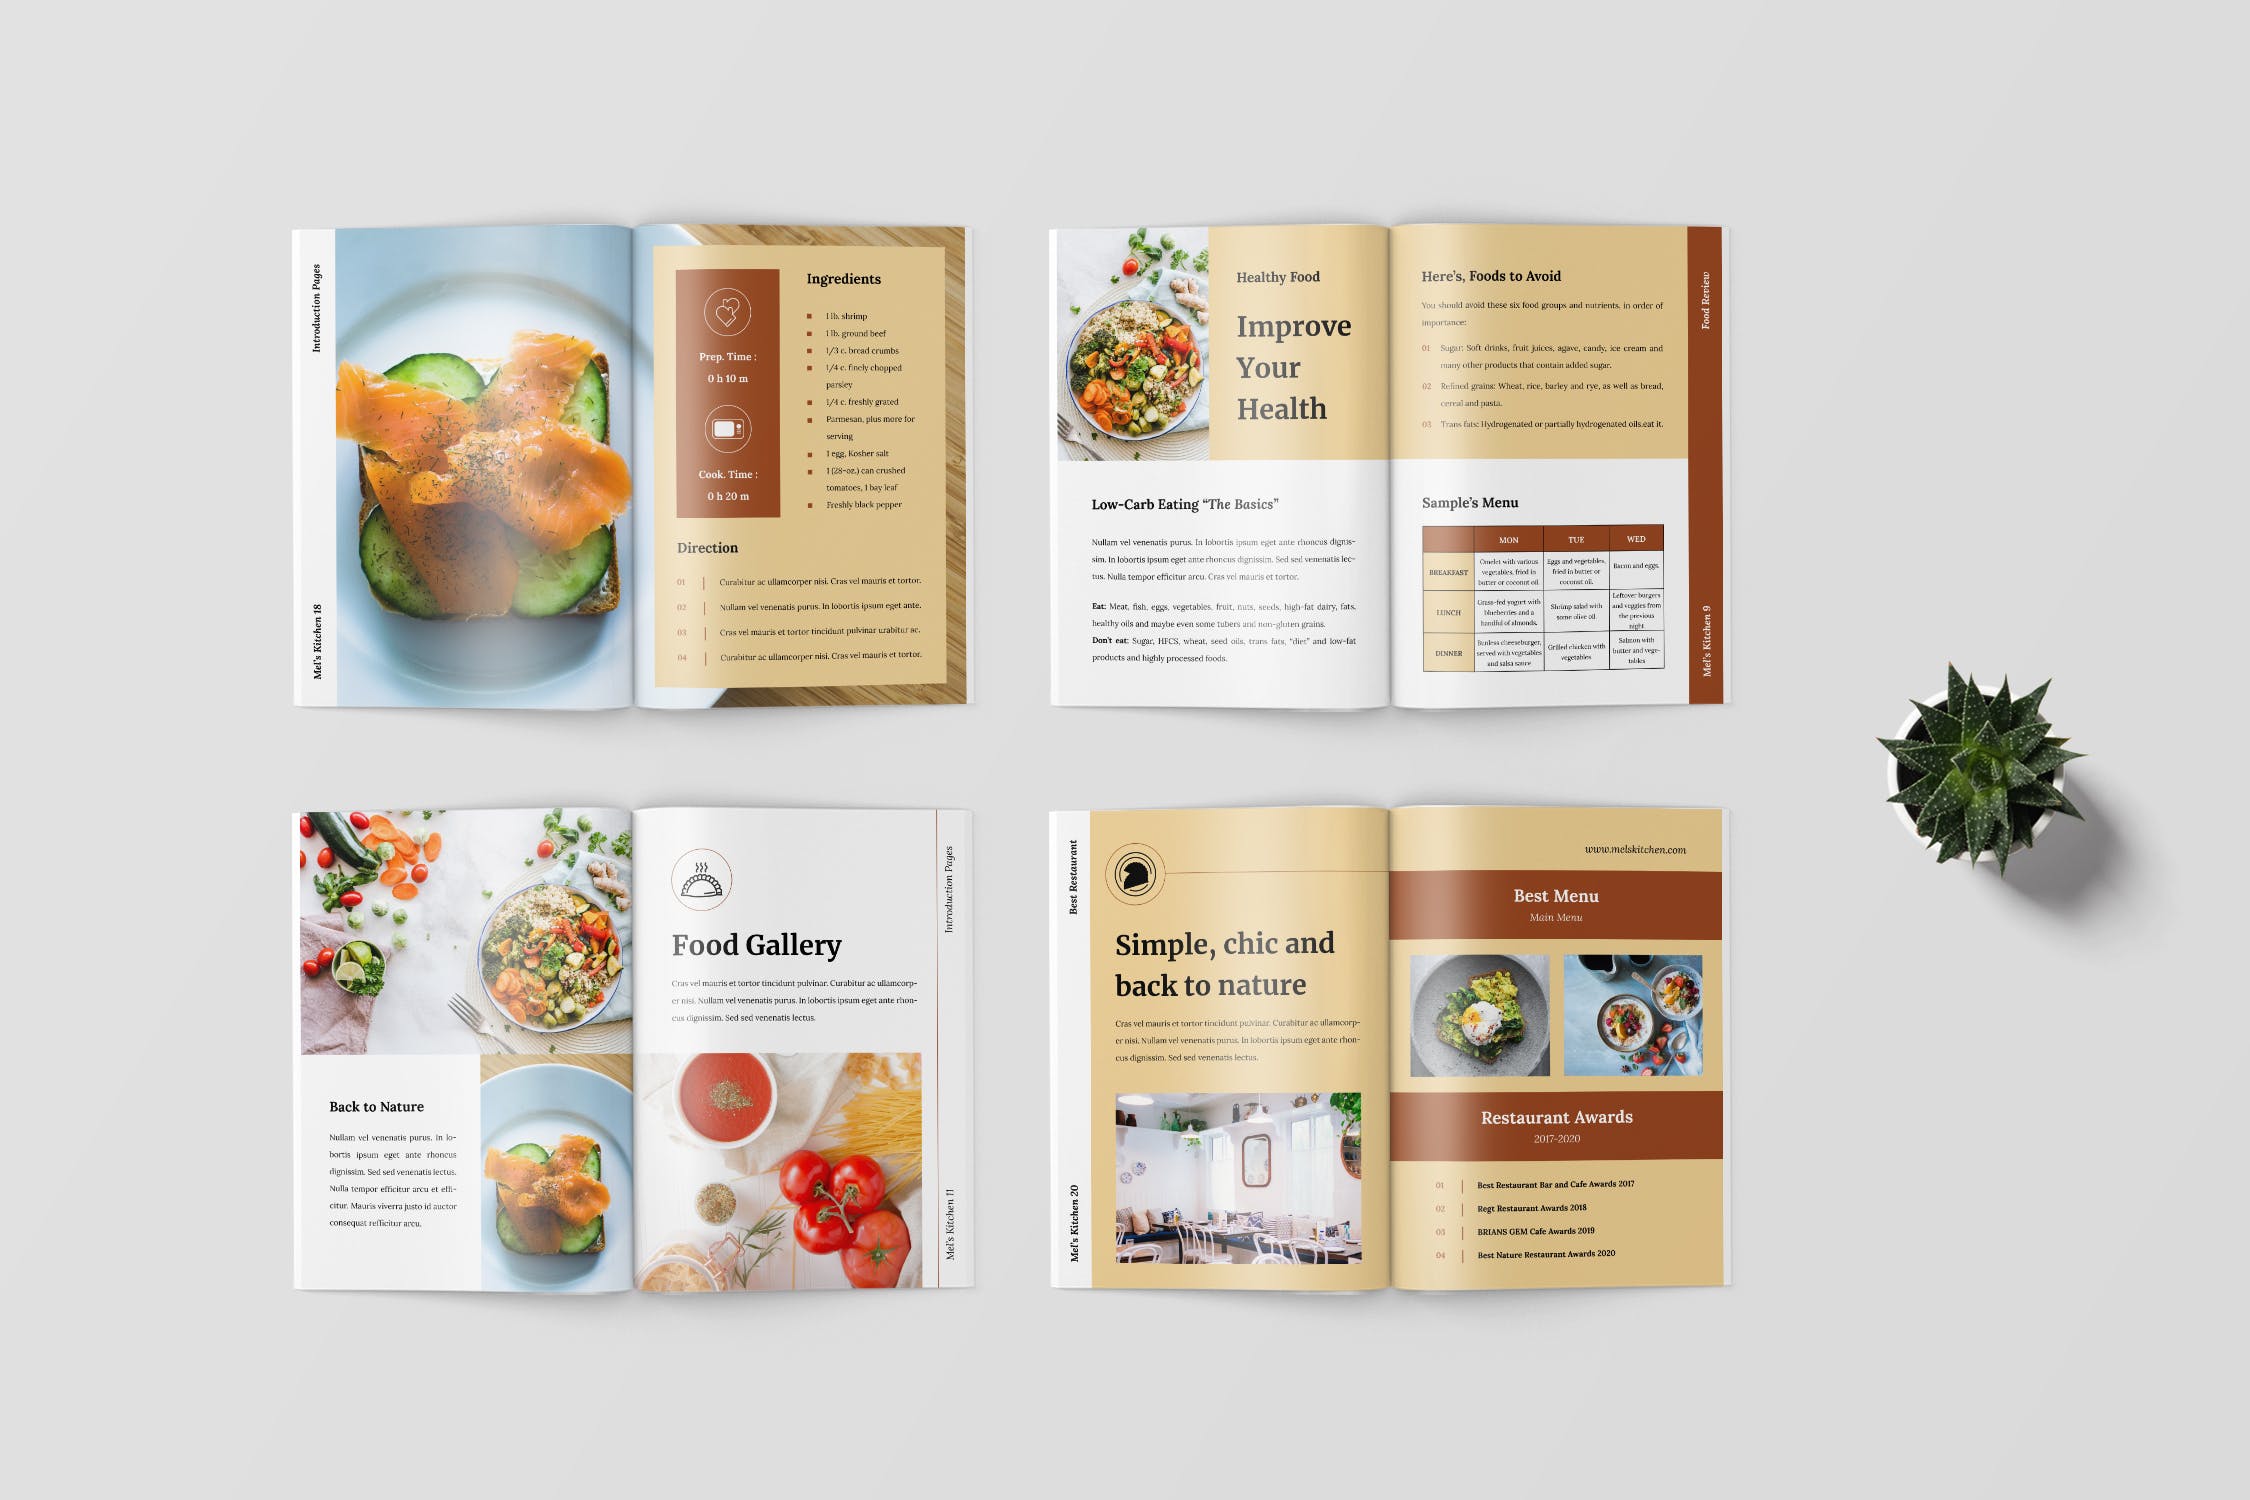 食谱美食主题杂志排版设计制作模板 Recipe Magazine Template插图3